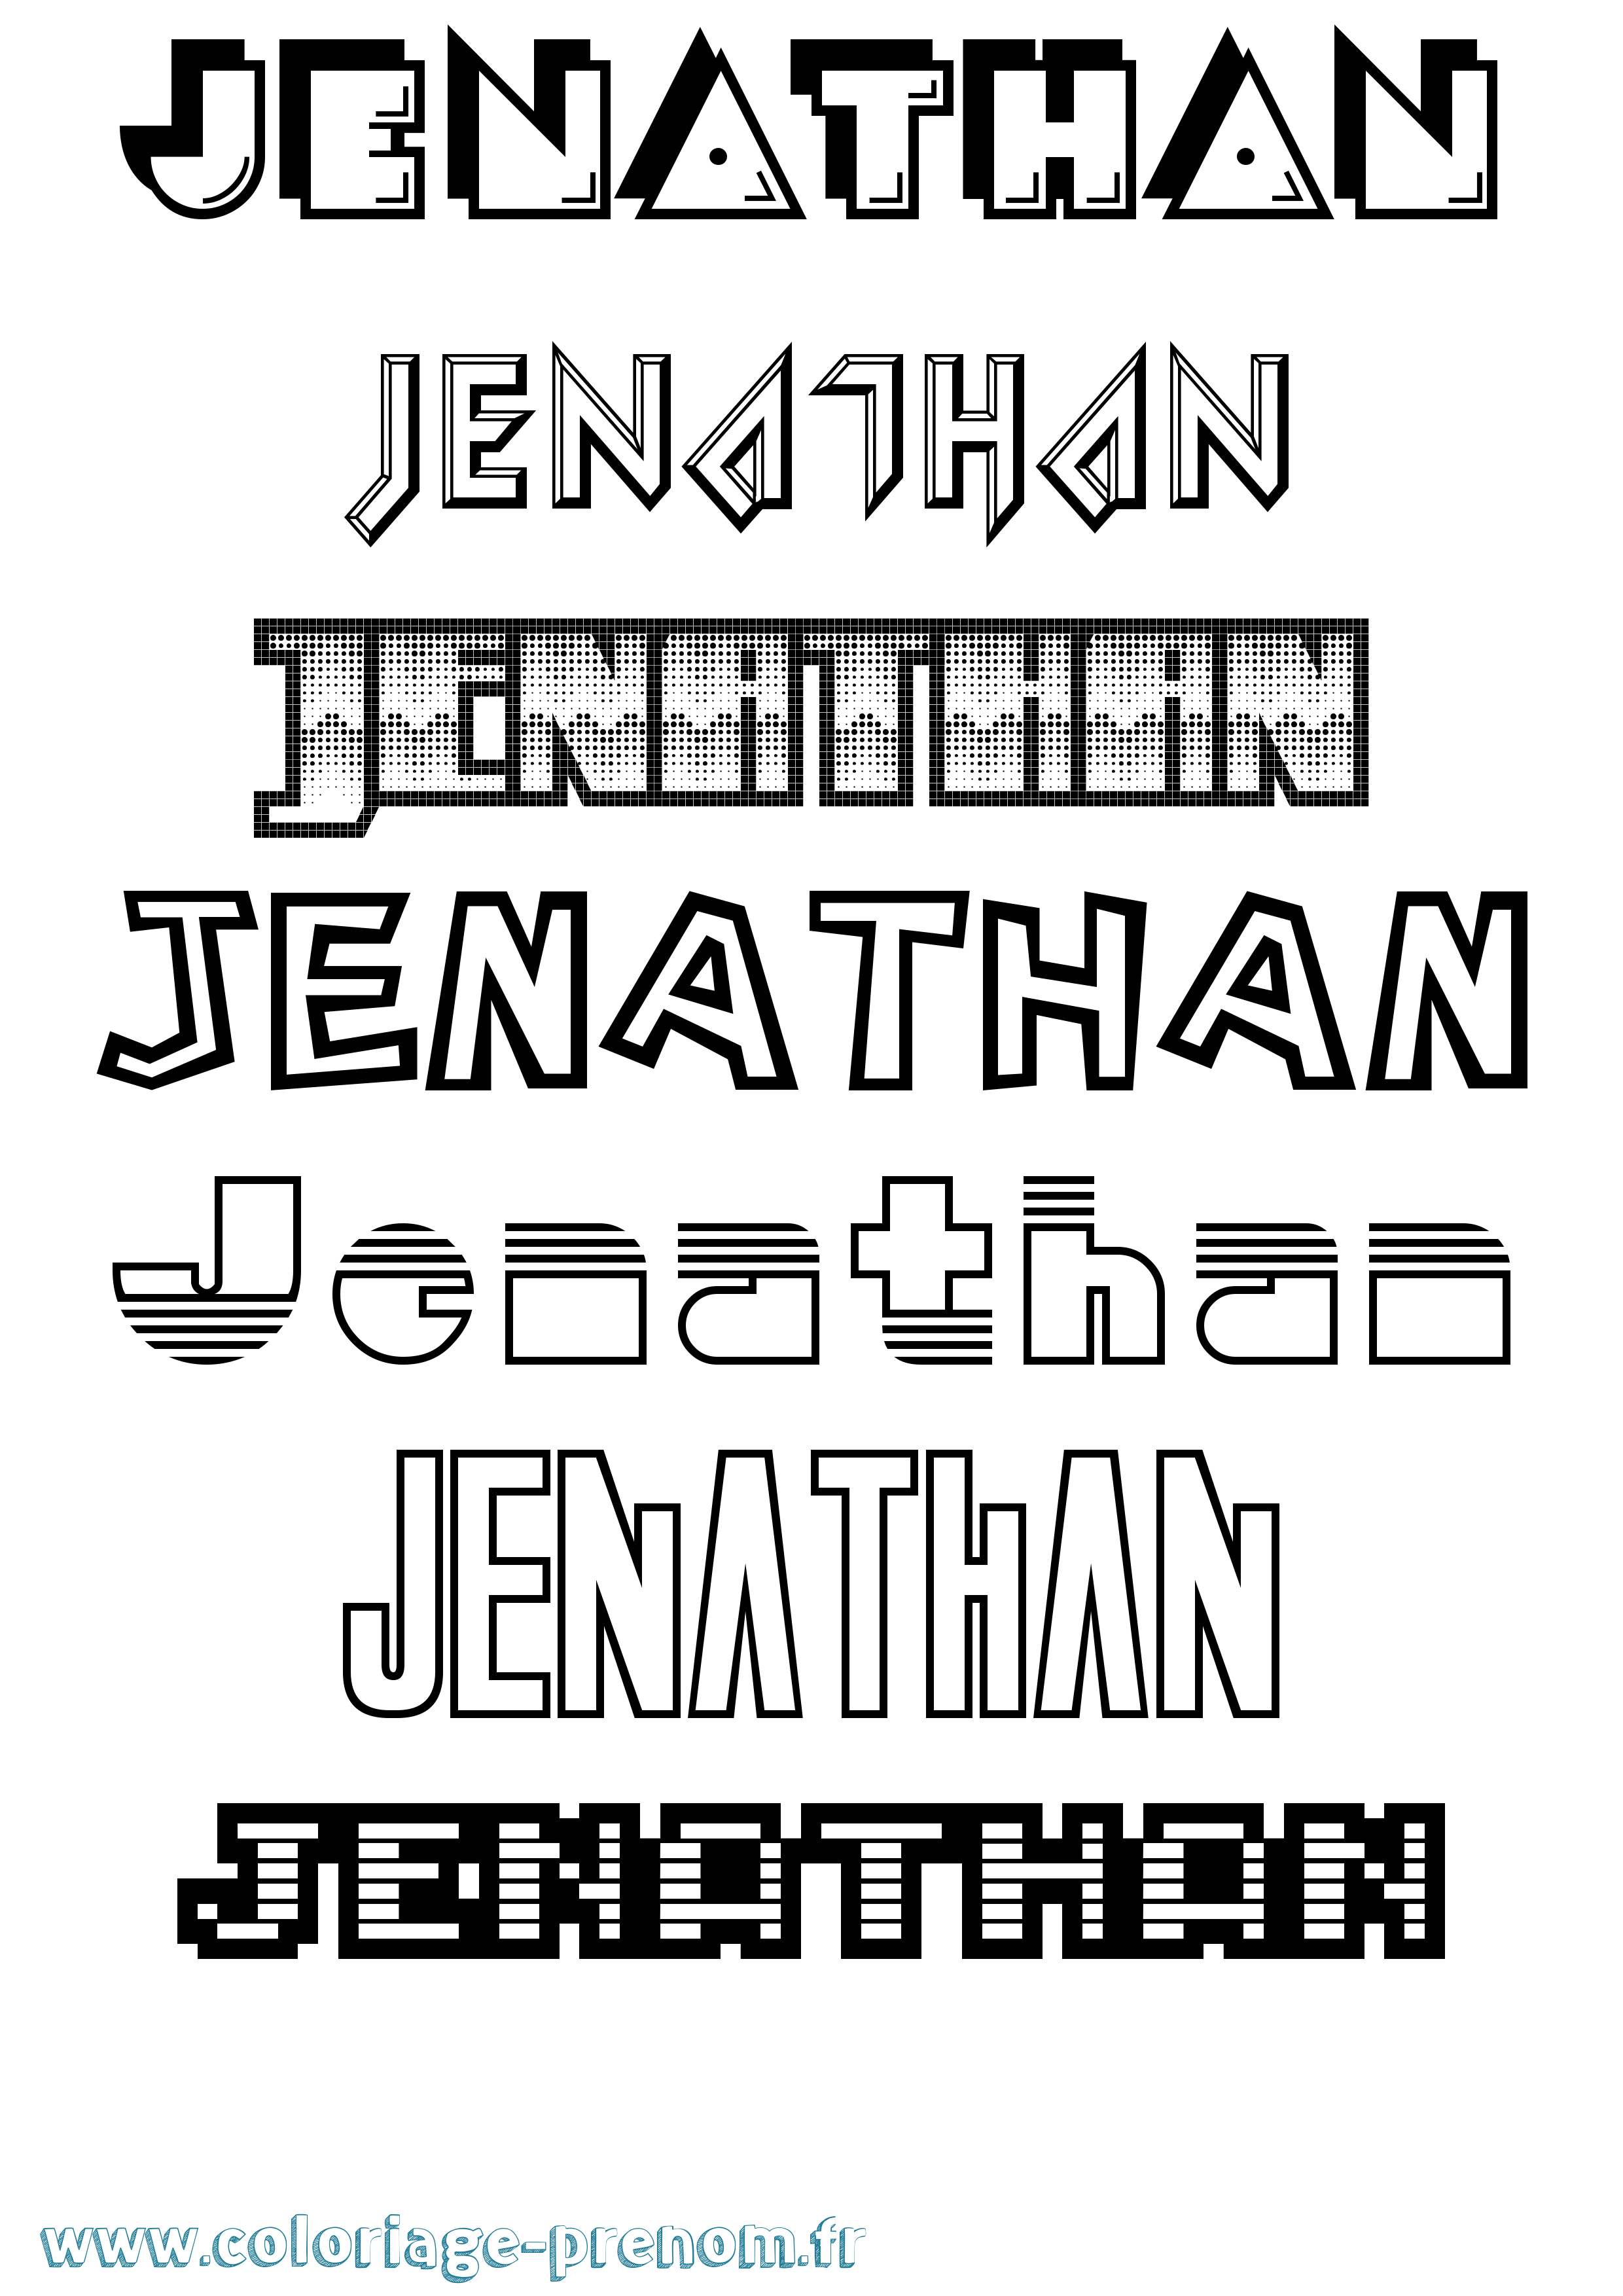 Coloriage prénom Jenathan Jeux Vidéos